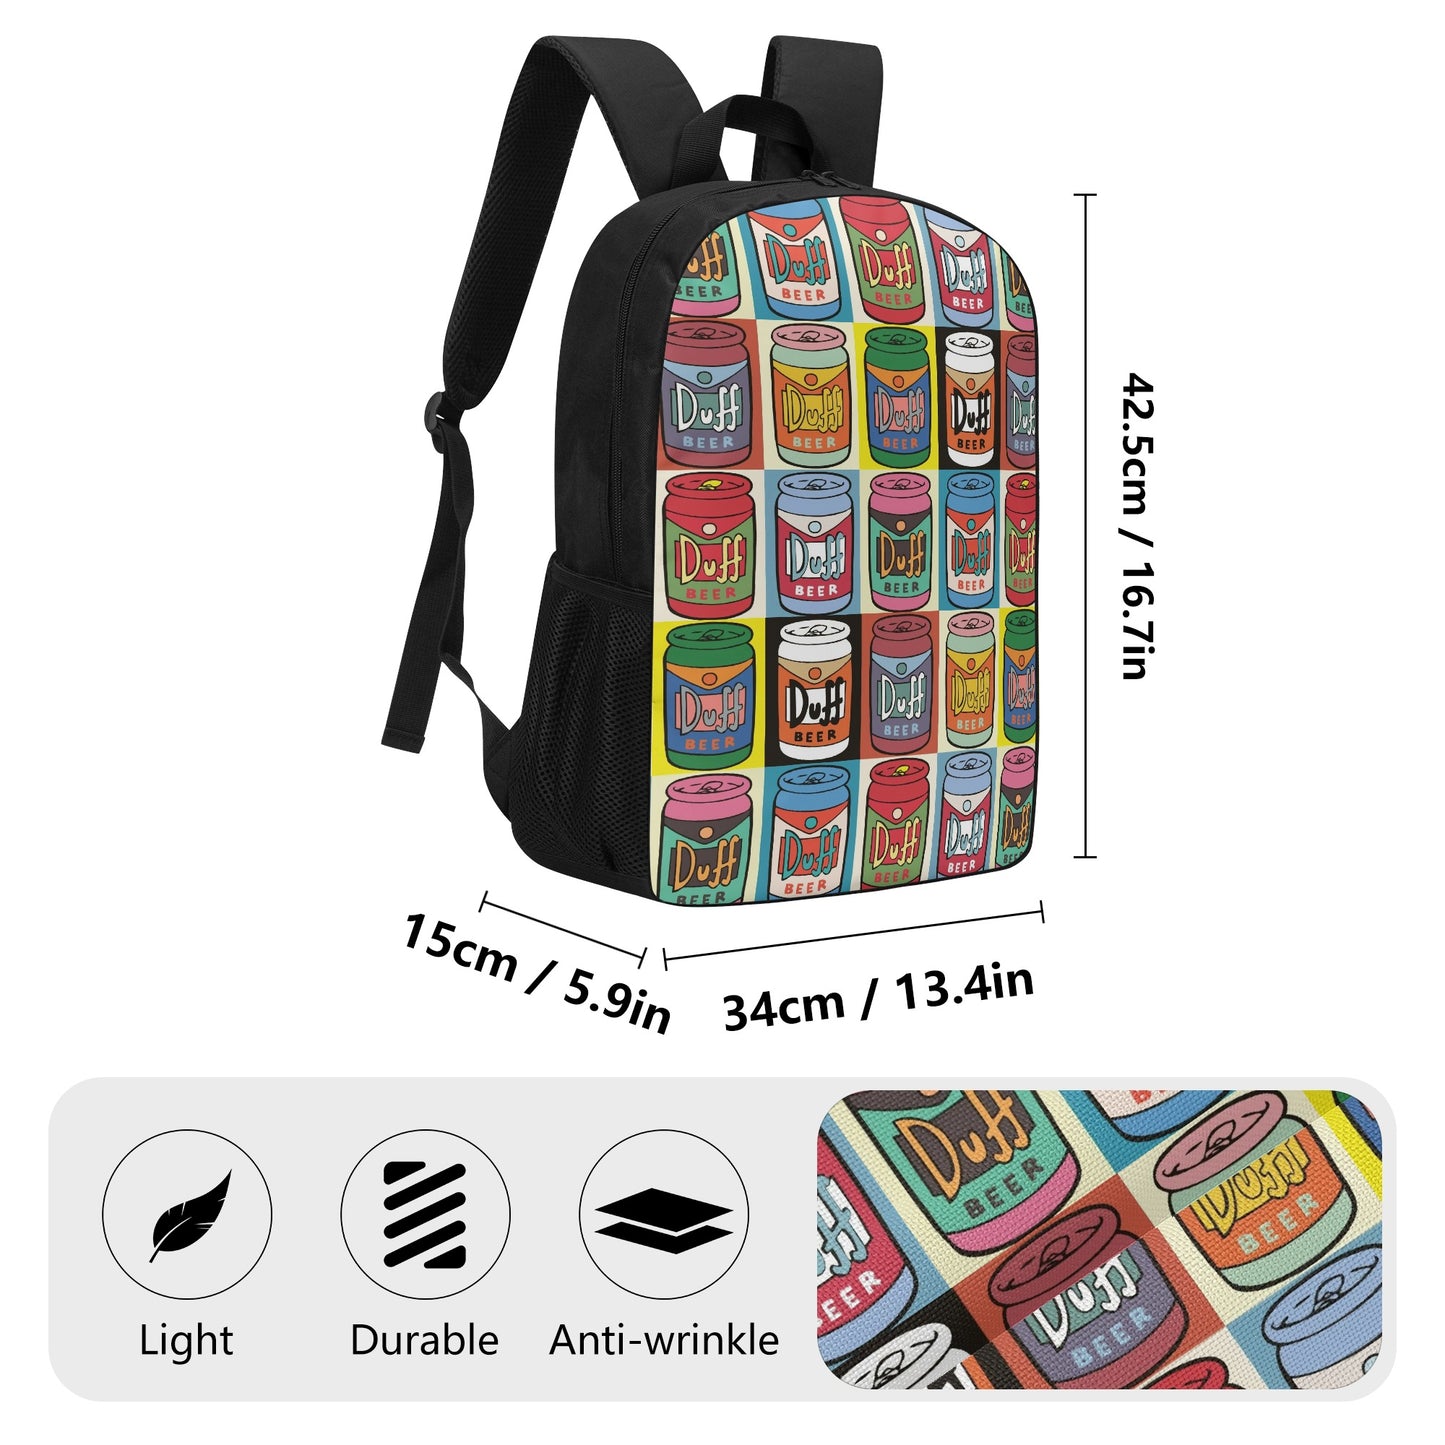 Backpack School Duff Beer pop art DrinkandArt